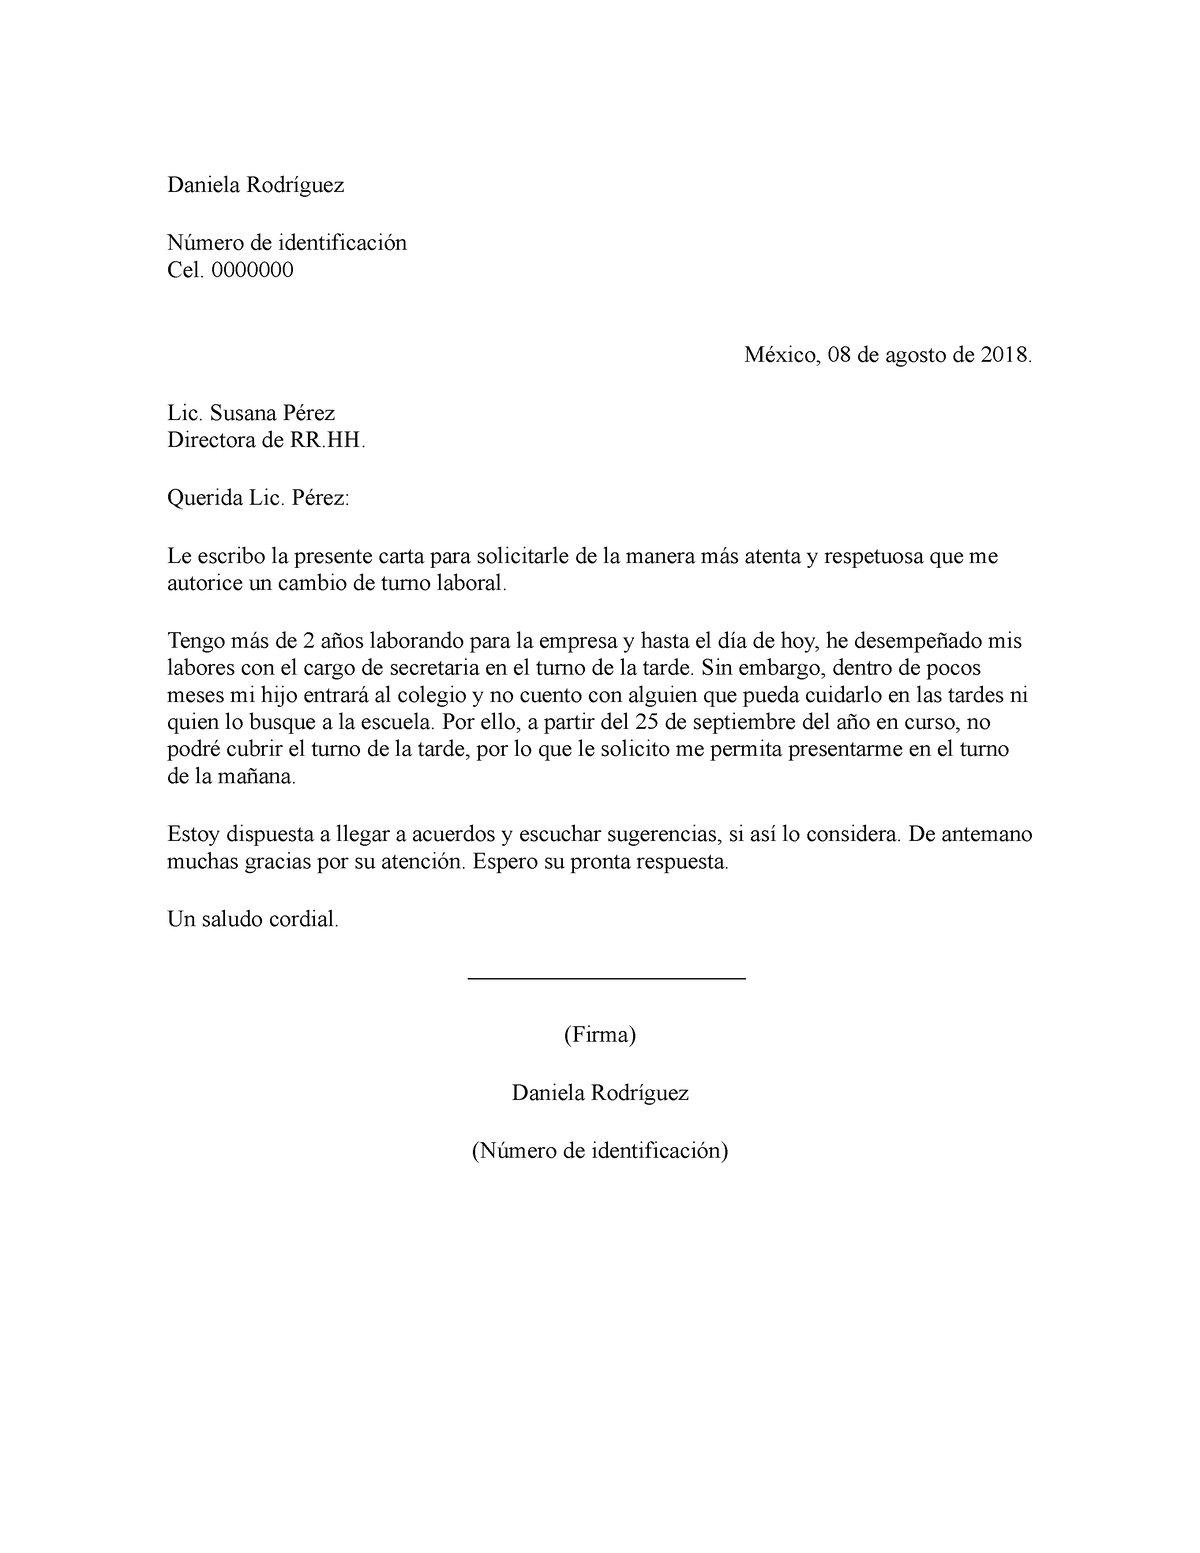 Ejemplo de carta de solicitud de cambio de turno - Daniela Rodríguez Número  de identificación Cel. - Studocu